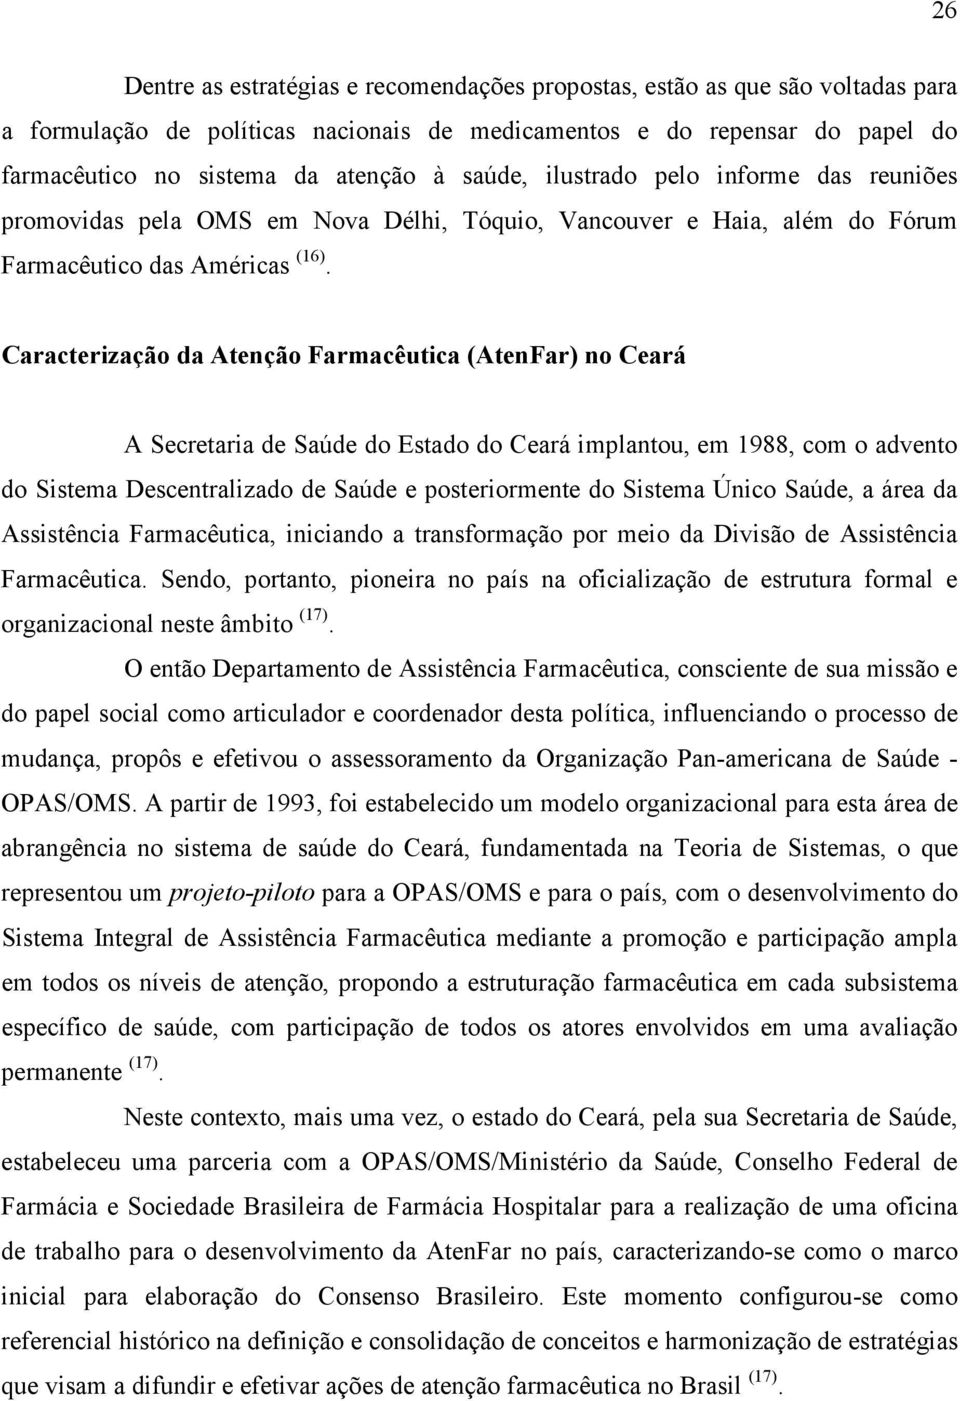 Caracterização da Atenção Farmacêutica (AtenFar) no Ceará A Secretaria de Saúde do Estado do Ceará implantou, em 1988, com o advento do Sistema Descentralizado de Saúde e posteriormente do Sistema